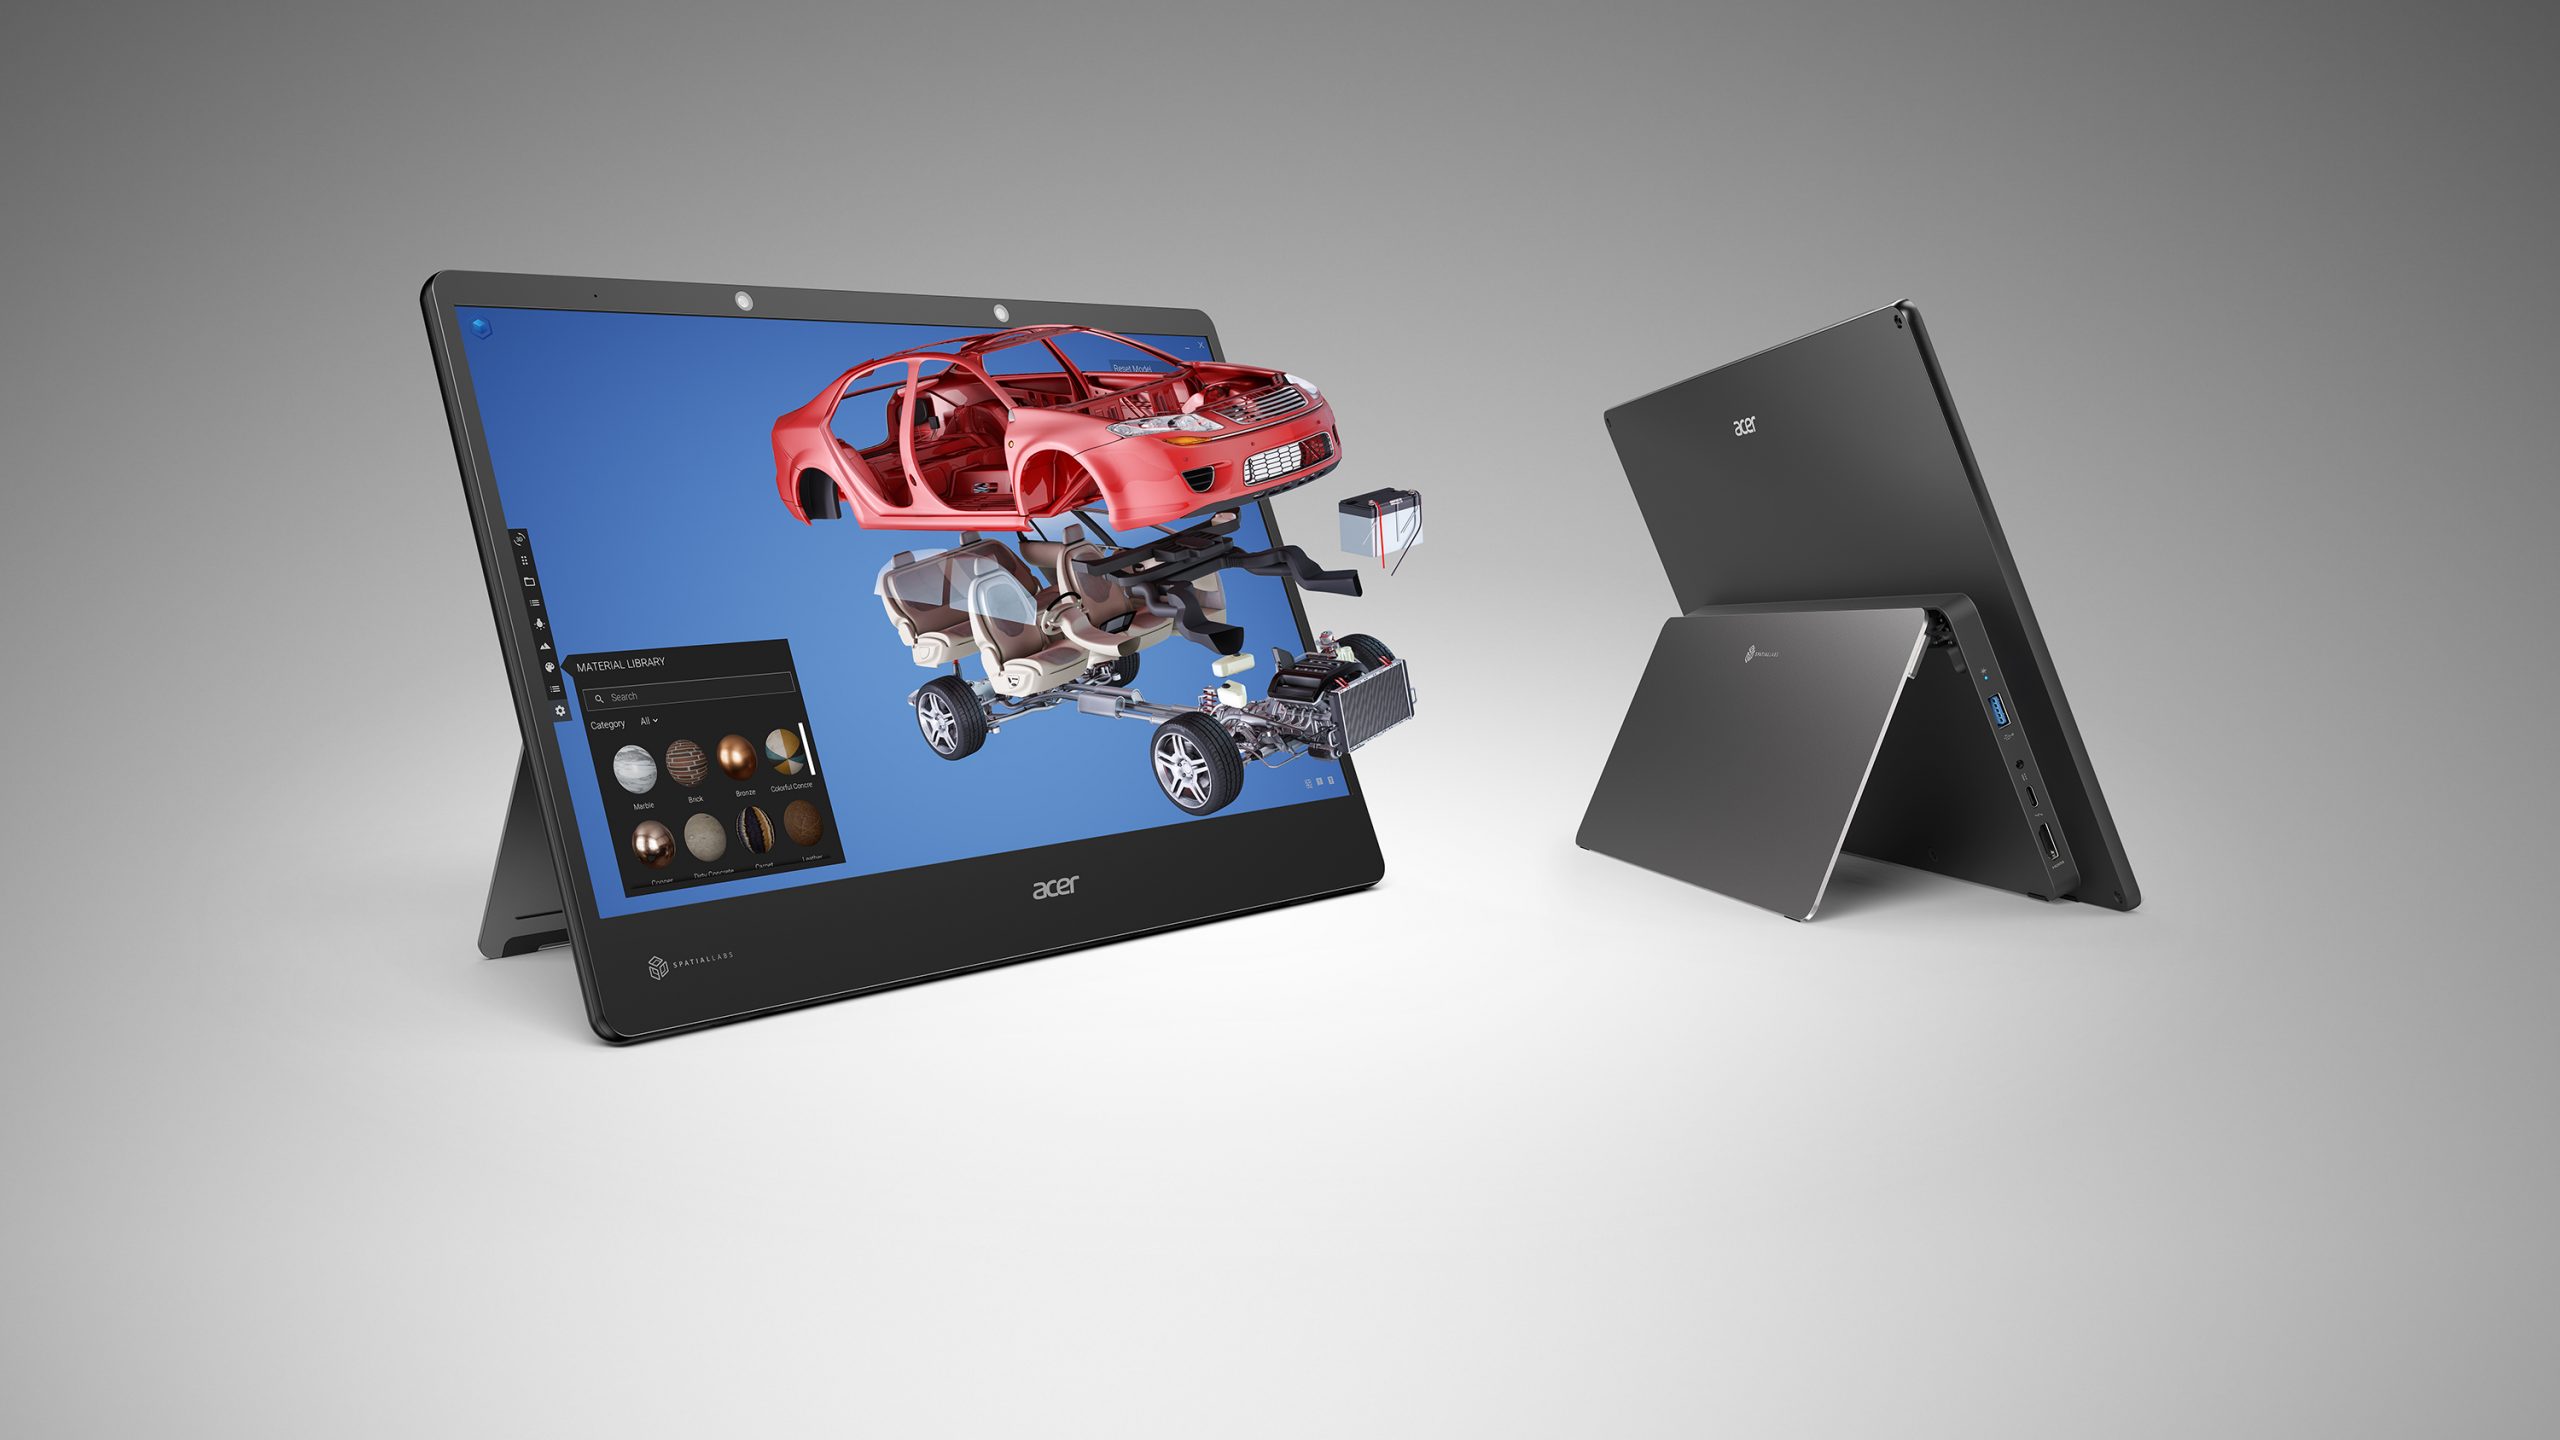 Acer mở rộng dải sản phẩm 3D với dòng màn hình SpatialLabs